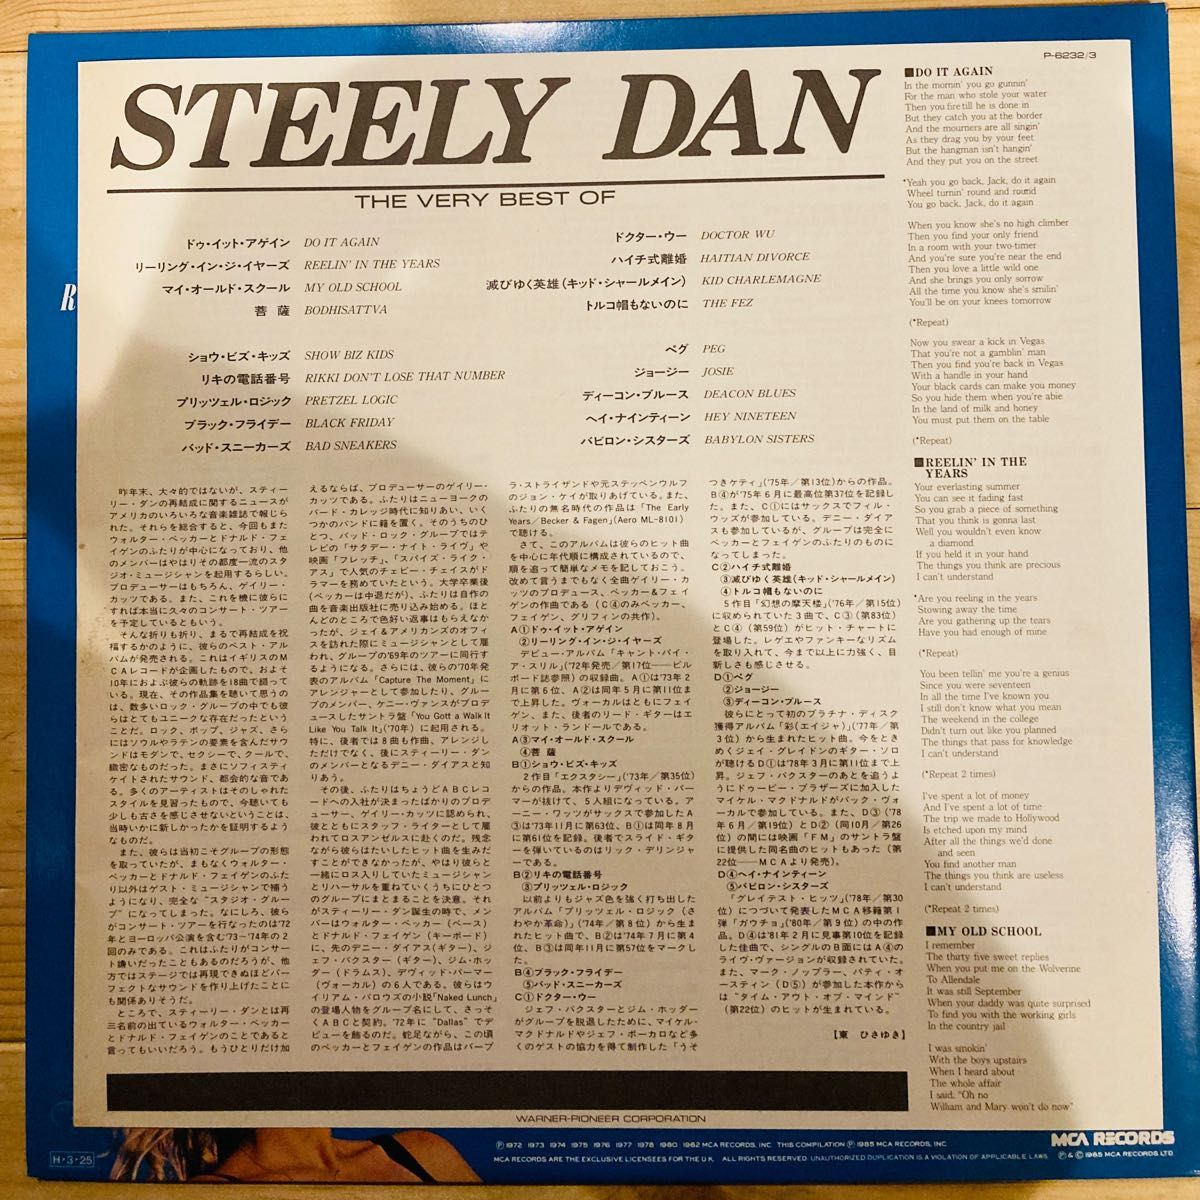 The Very Best Of Steely Dan 国内盤 LP レコード スティーリー・ダン ザ・ベリー・ベスト Vinyl